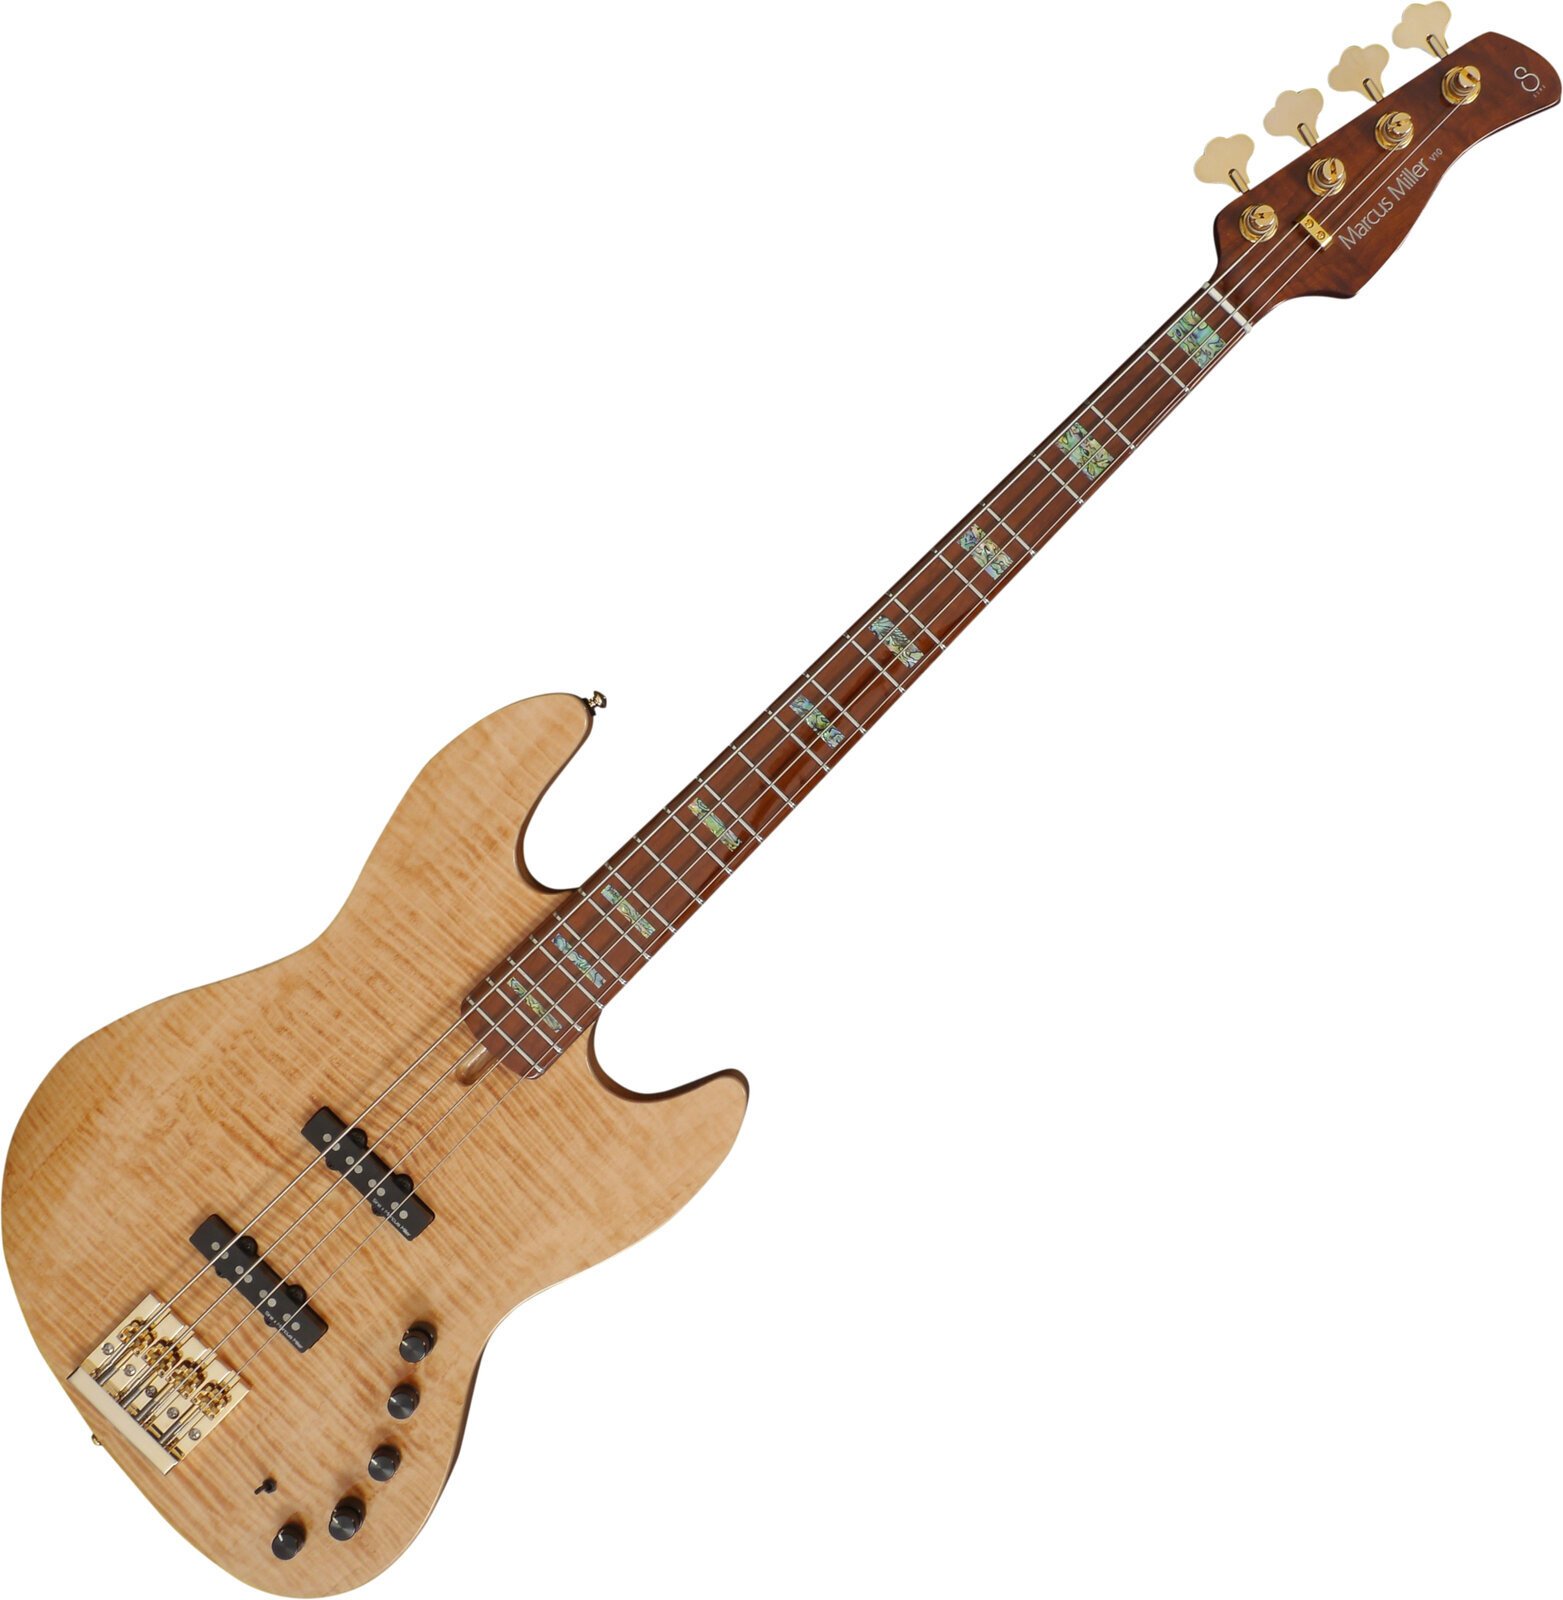 4-string Bassguitar Sire Marcus Miller V10 DX-4 Natural